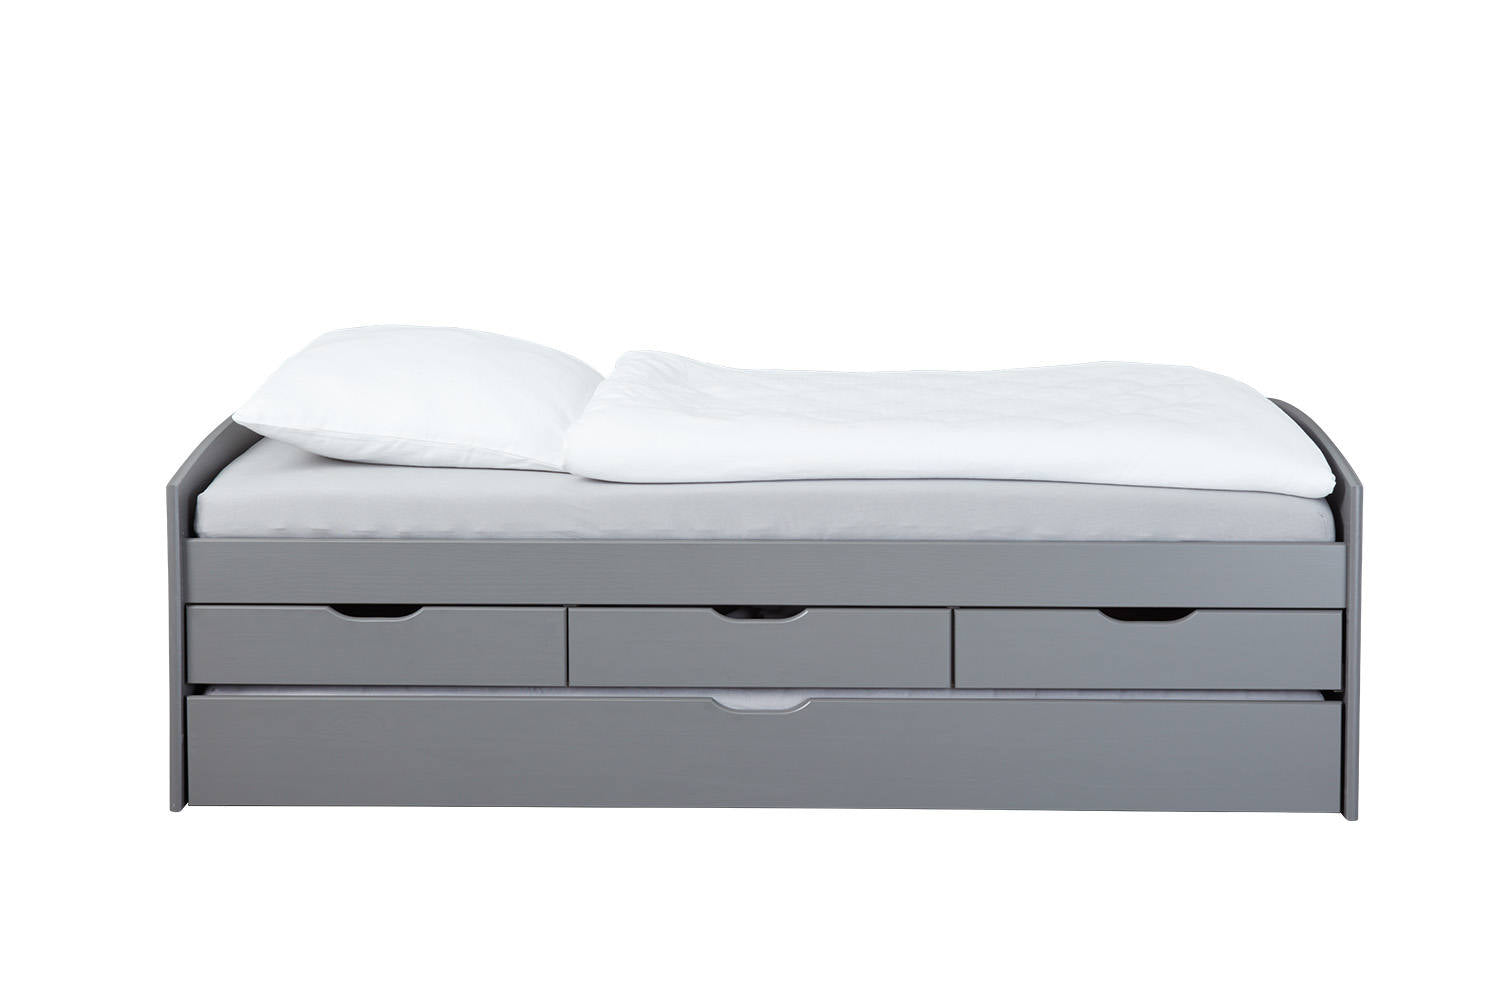 Letto con cassetti contenitore e secondo letto inferiore a estrazione, in pino massello tinto grigio, cm 98x205x63, reti escluse